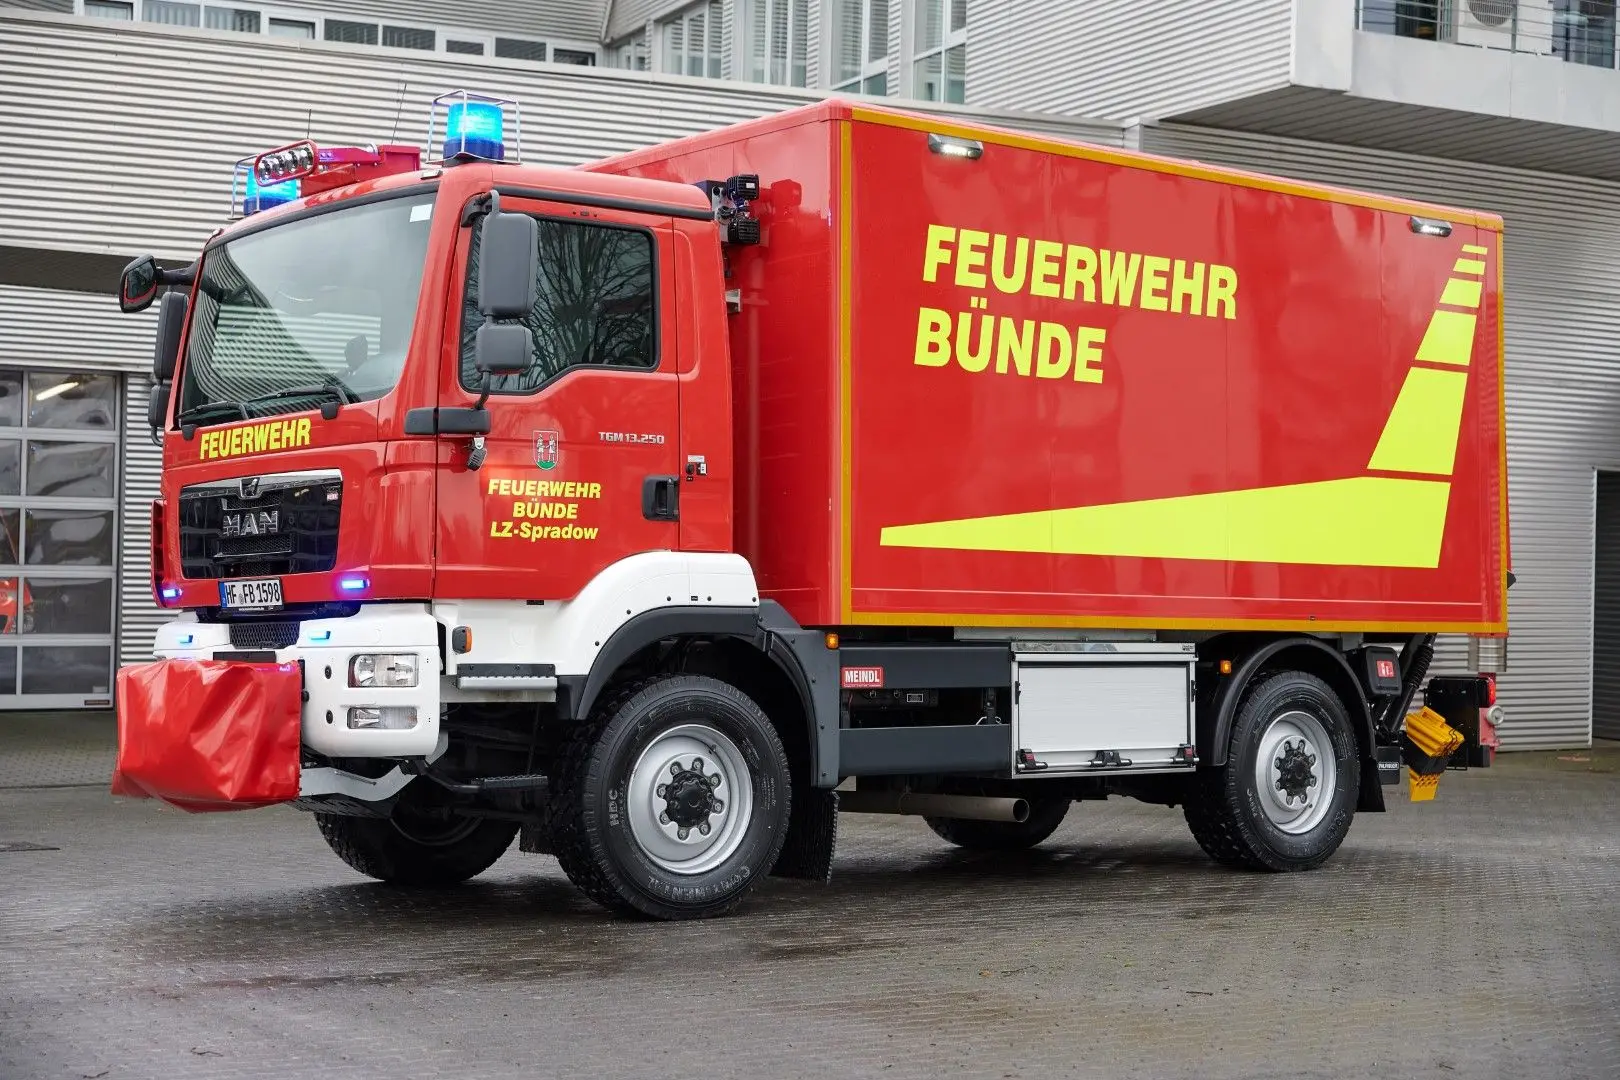 GW-L2 Feuerwehr Bünde Gerätewagen